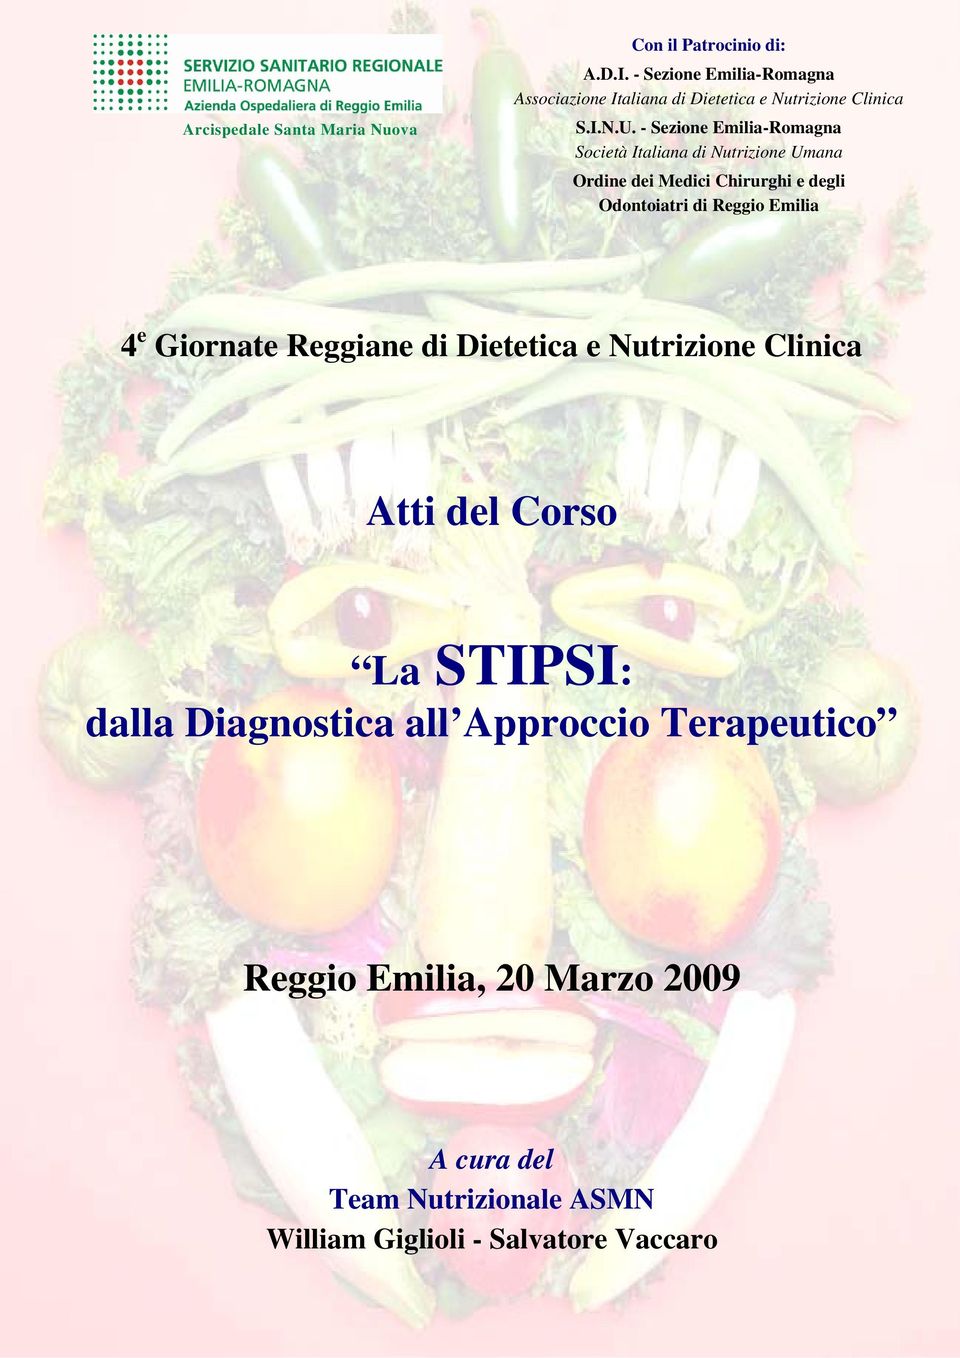 - Sezione Emilia-Romagna Società Italiana di Nutrizione Umana Ordine dei Medici Chirurghi e degli Odontoiatri di Reggio